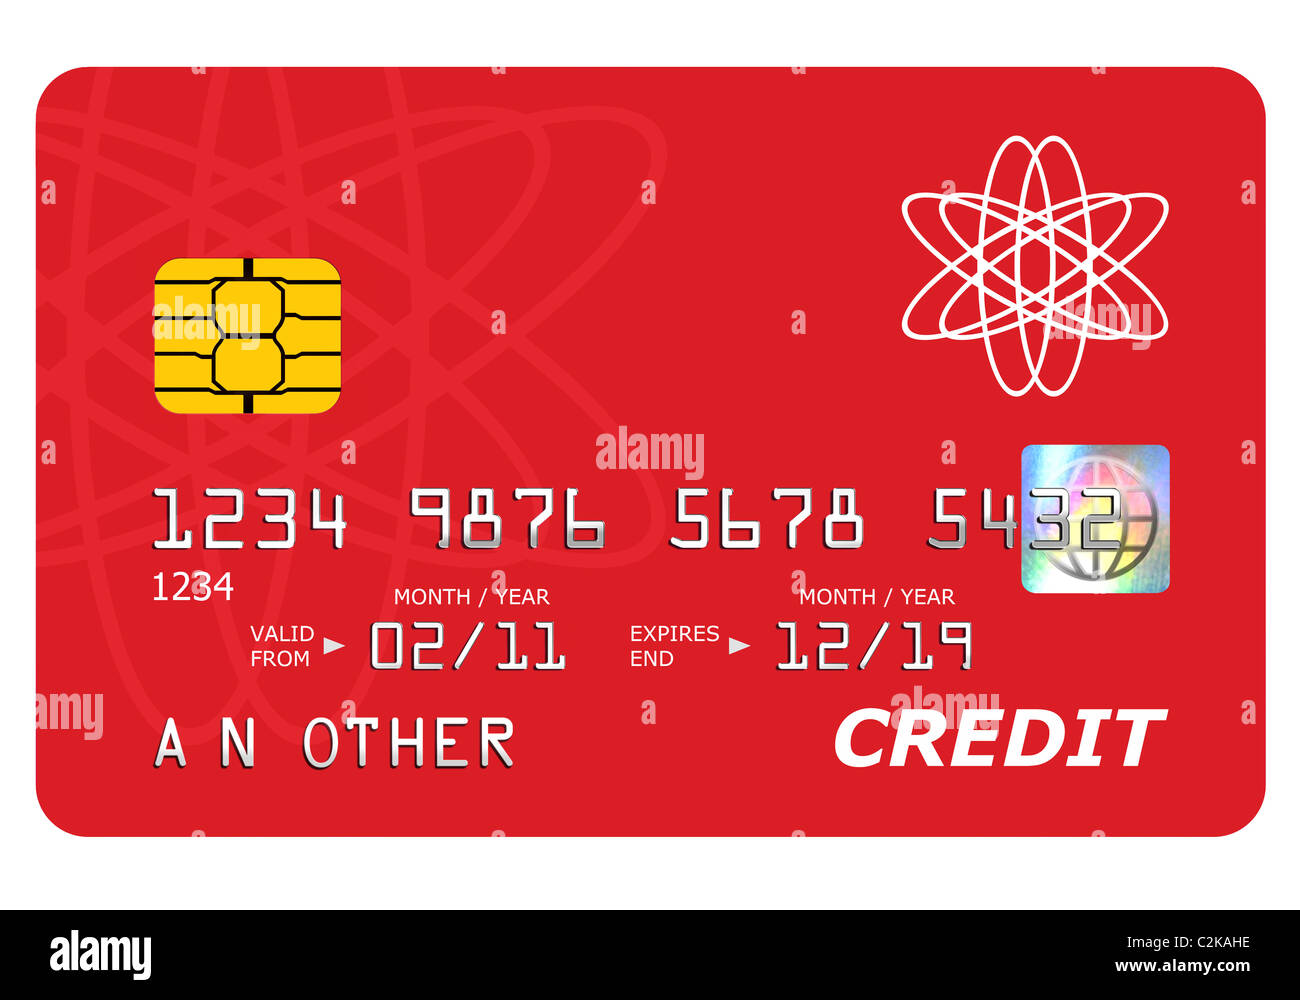 Tutto ciò che è presente su una simulazione carta di credito tra cui l'ologramma è stato progettato da me, il numero e il nome è generico. Foto Stock